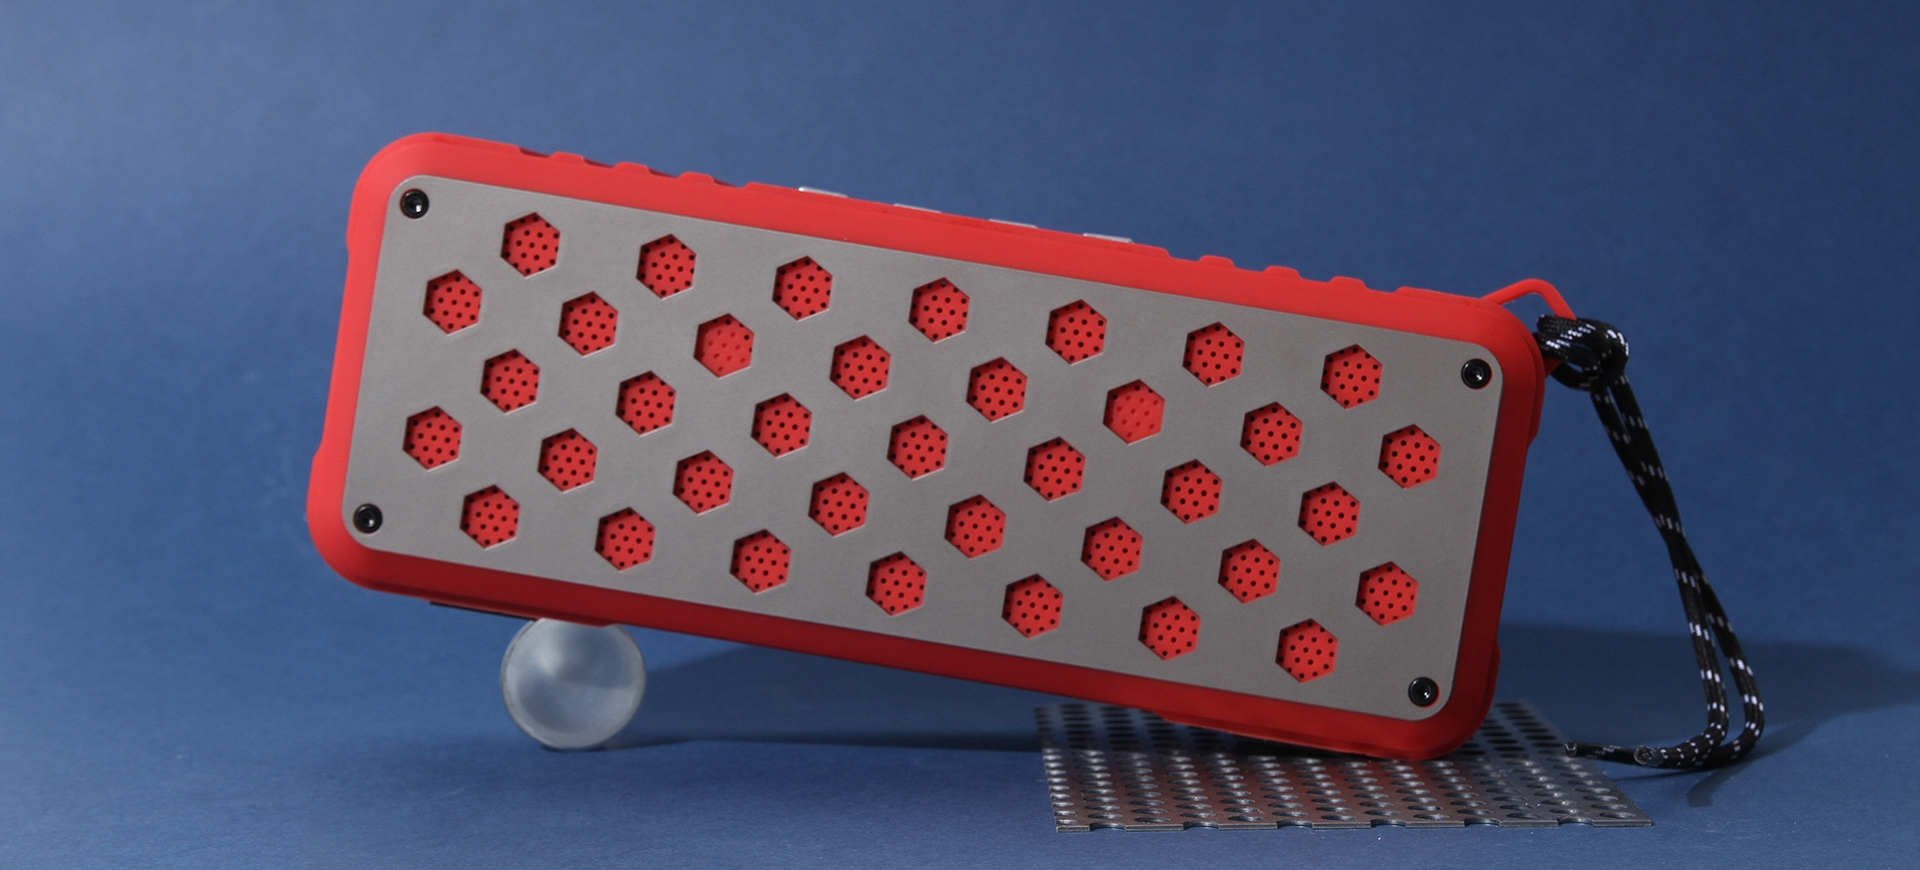 Портативная колонка Rombica Мysound Twinbox, красный, красный, пластик + металл